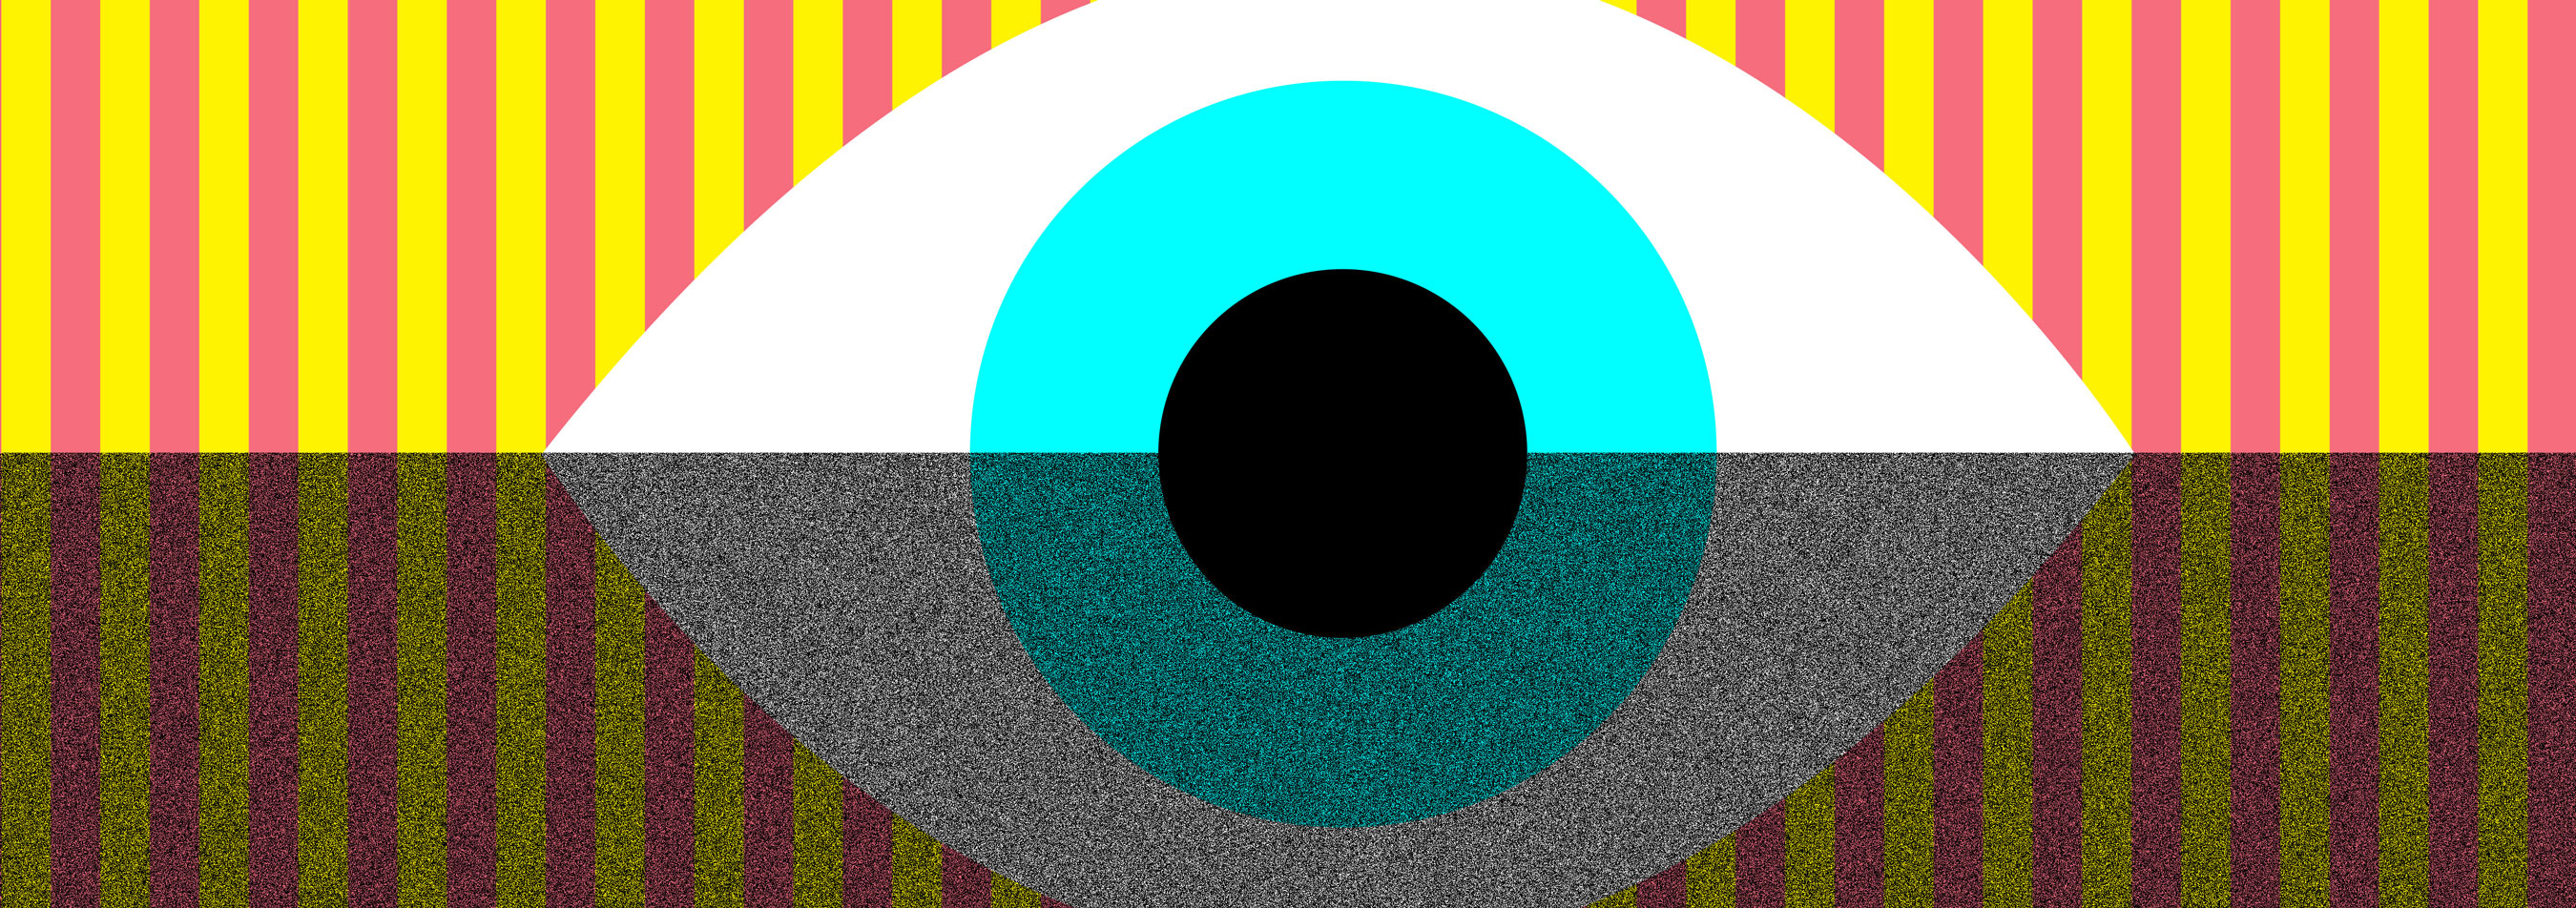 Illustration of eyeball